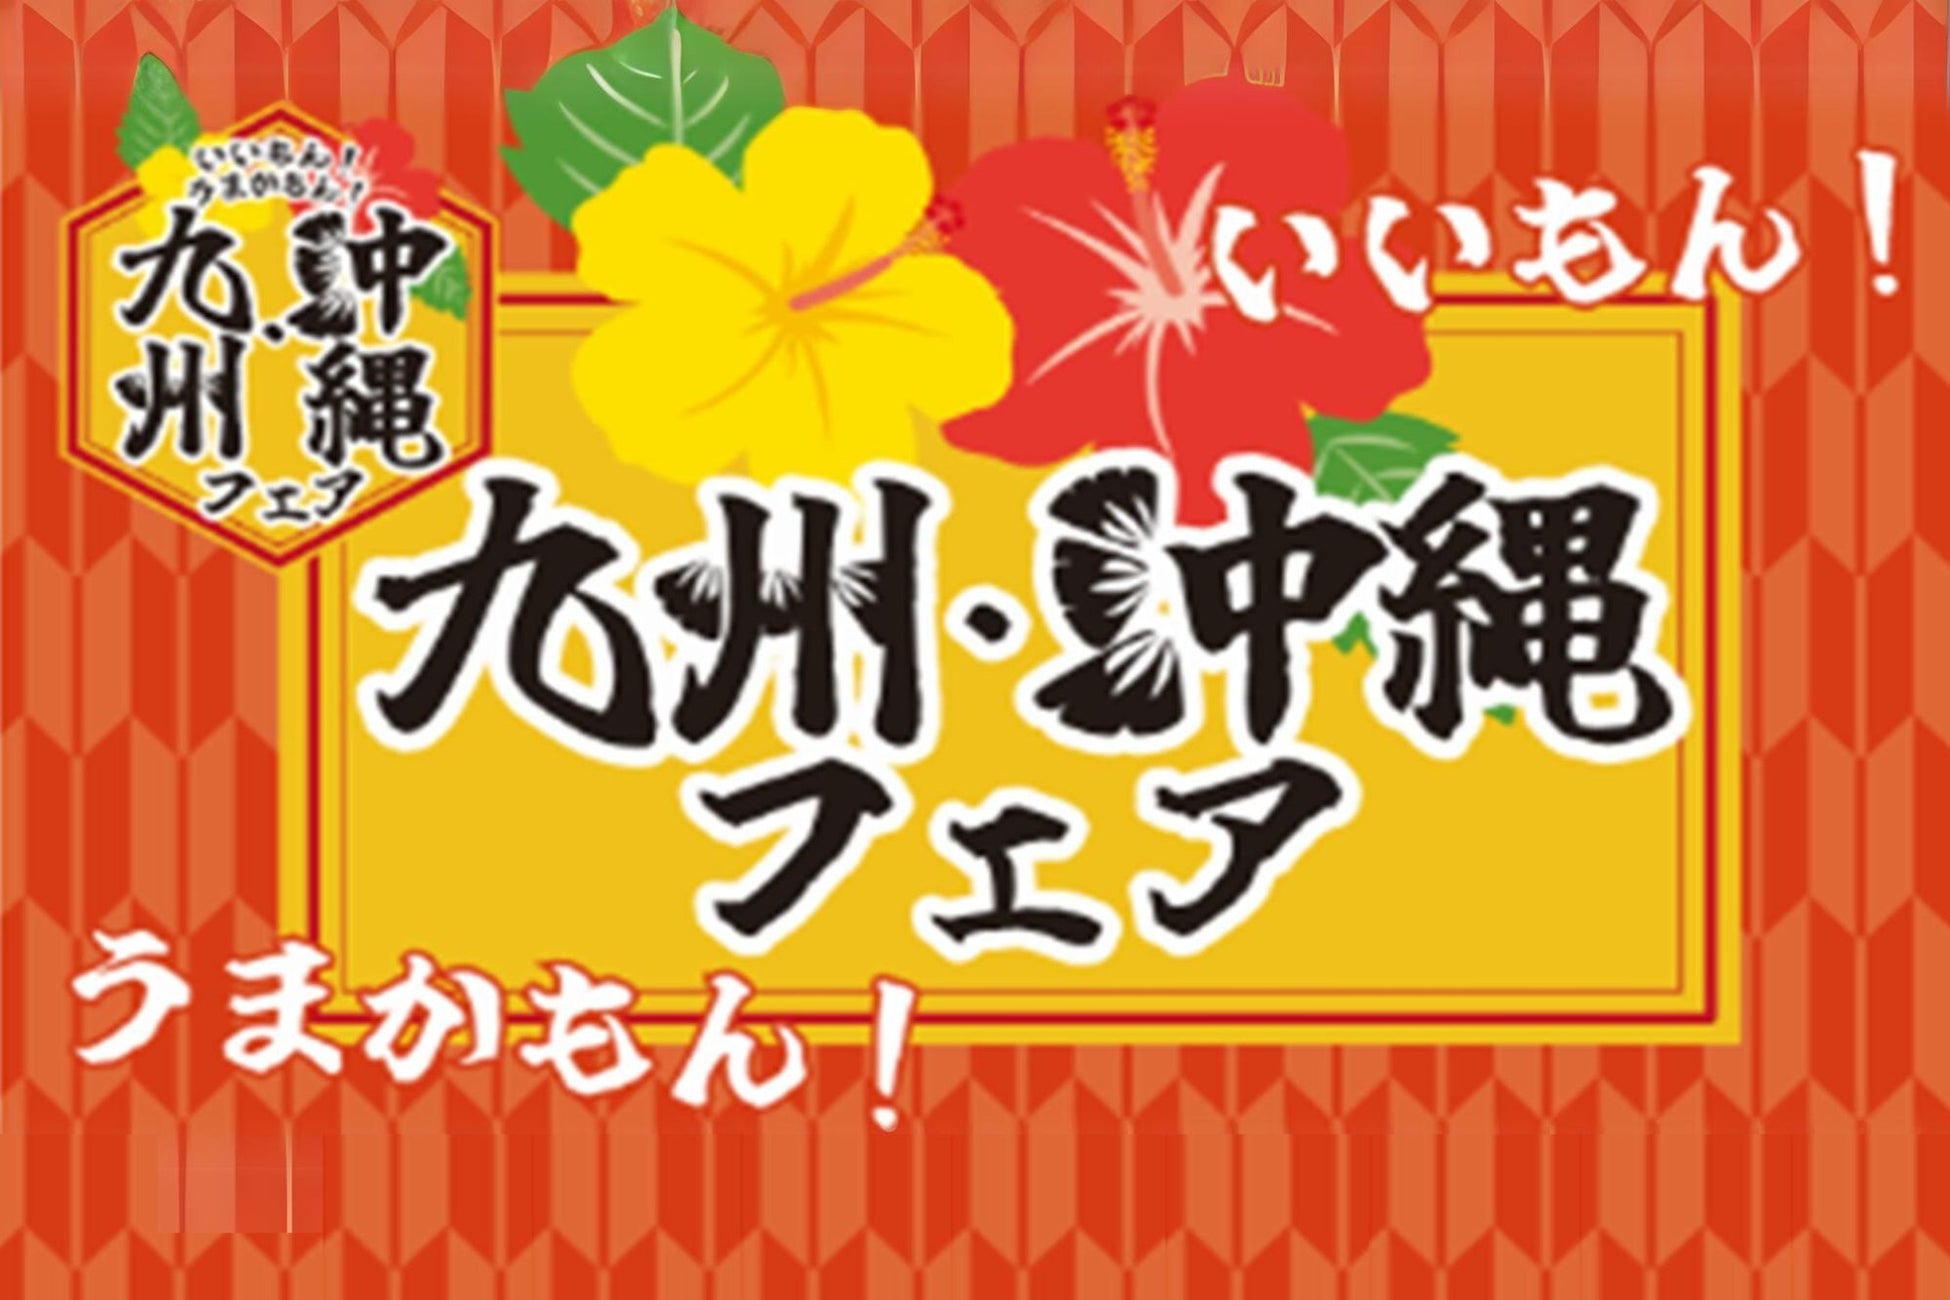 食中酒のニュースタンダード「REISHI GIN」第一弾は日本を代表する10店の匠とコラボレーション